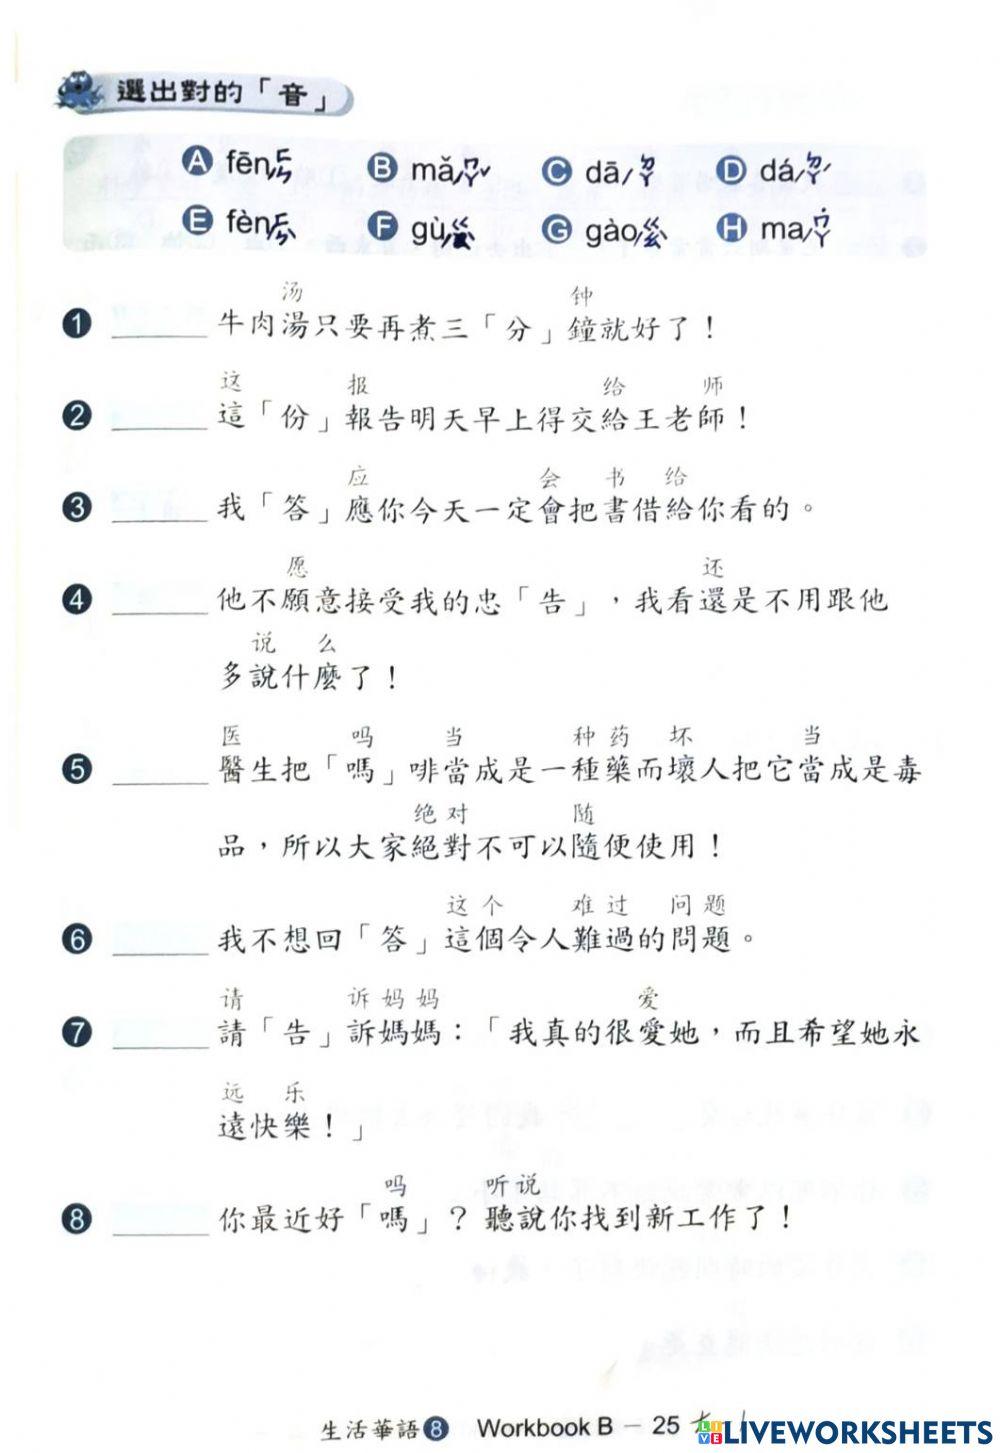 生活華語第八冊生習作b